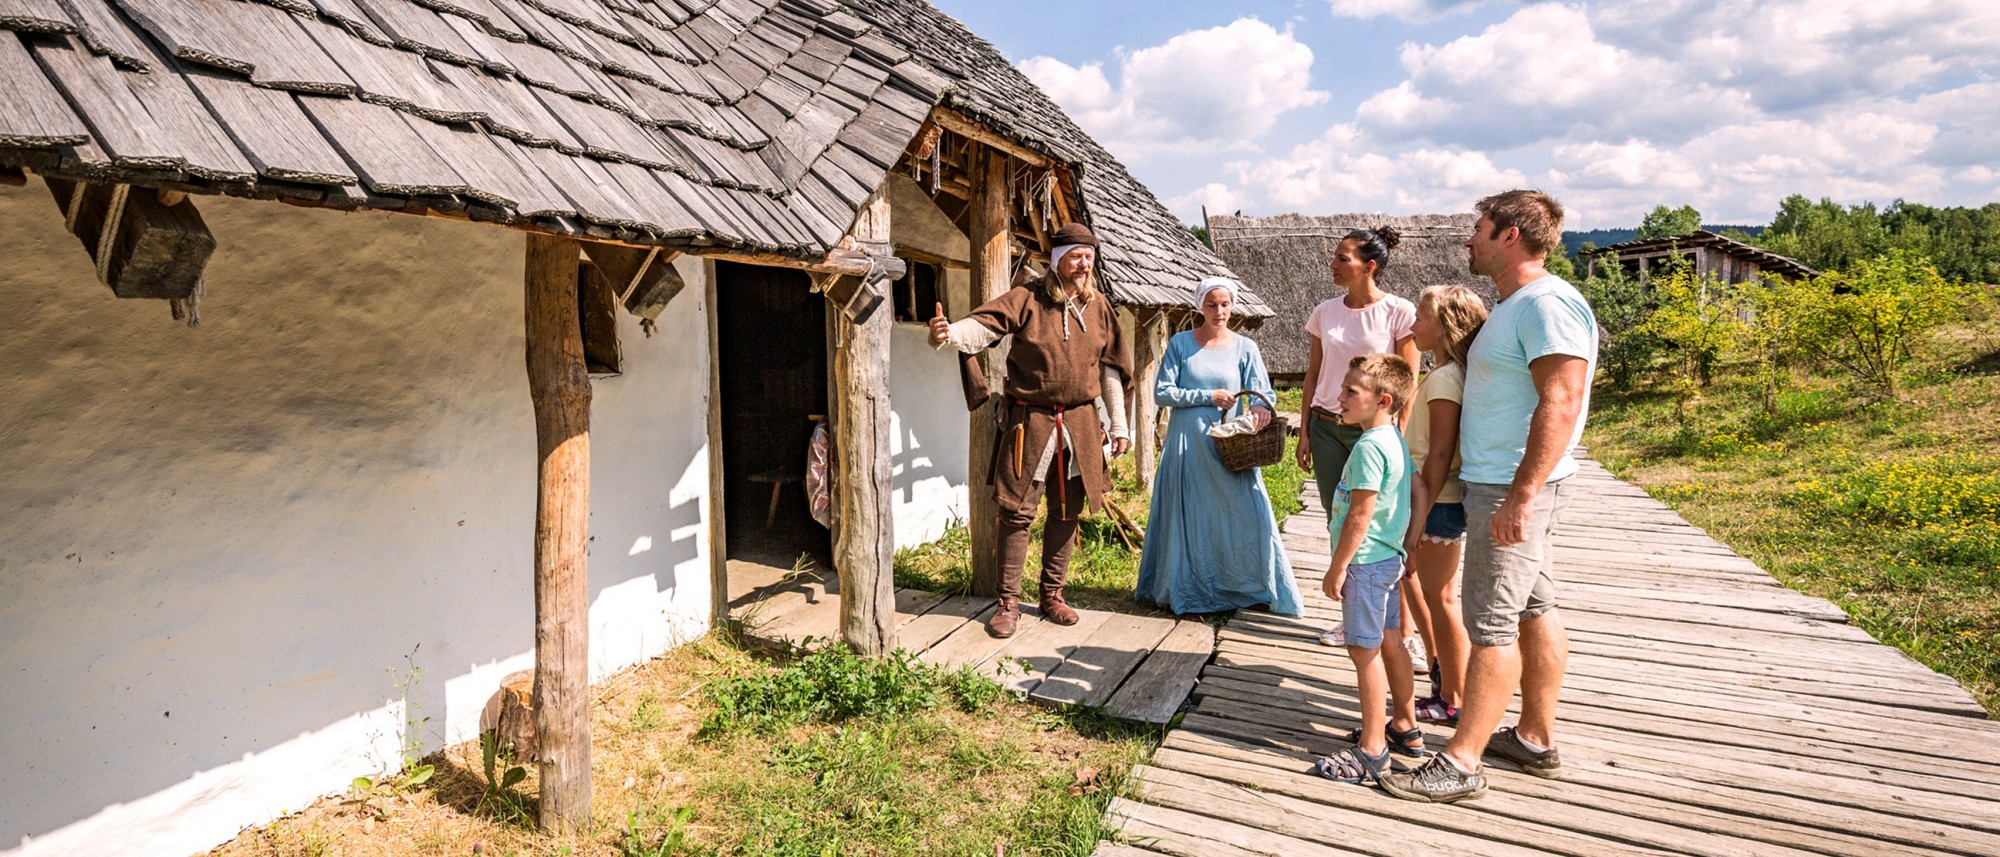 Zwei Personen in mittelalterlicher Kleidung zeigen einer Familie ein slawisches Haus aus Lehm und Holz